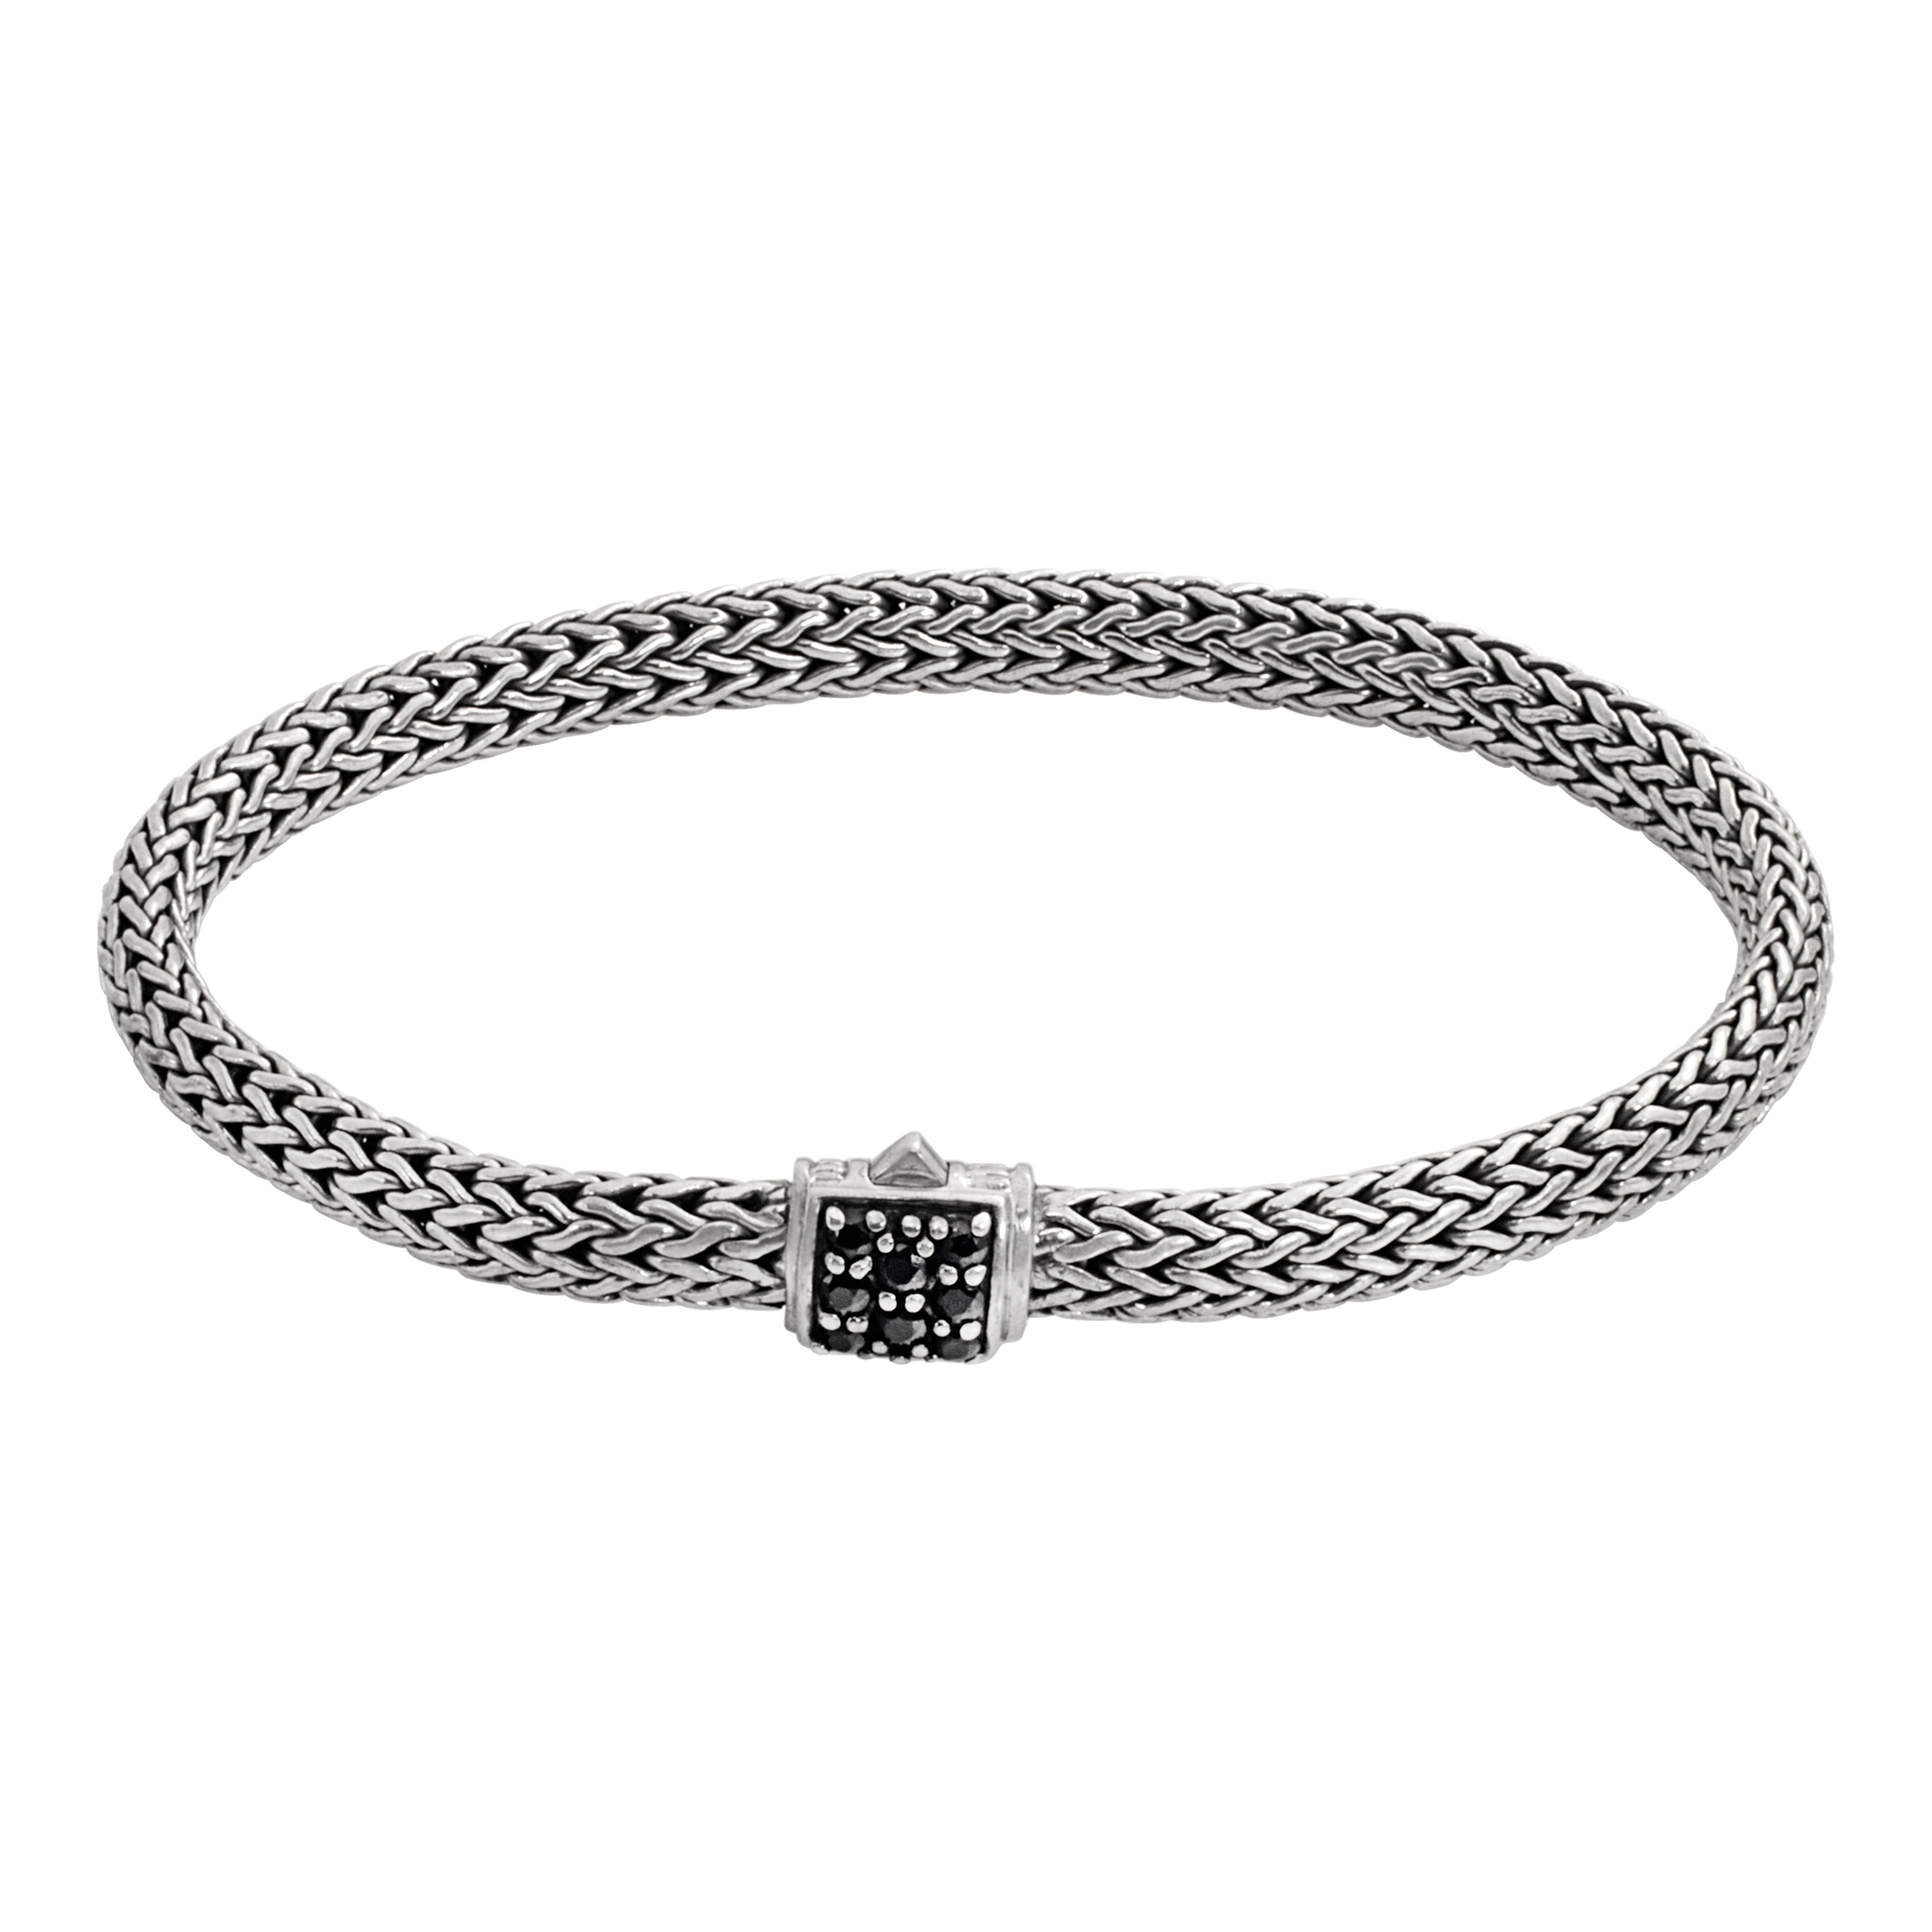 John Hardy sapphire bracelet in sterling silver (Stones)